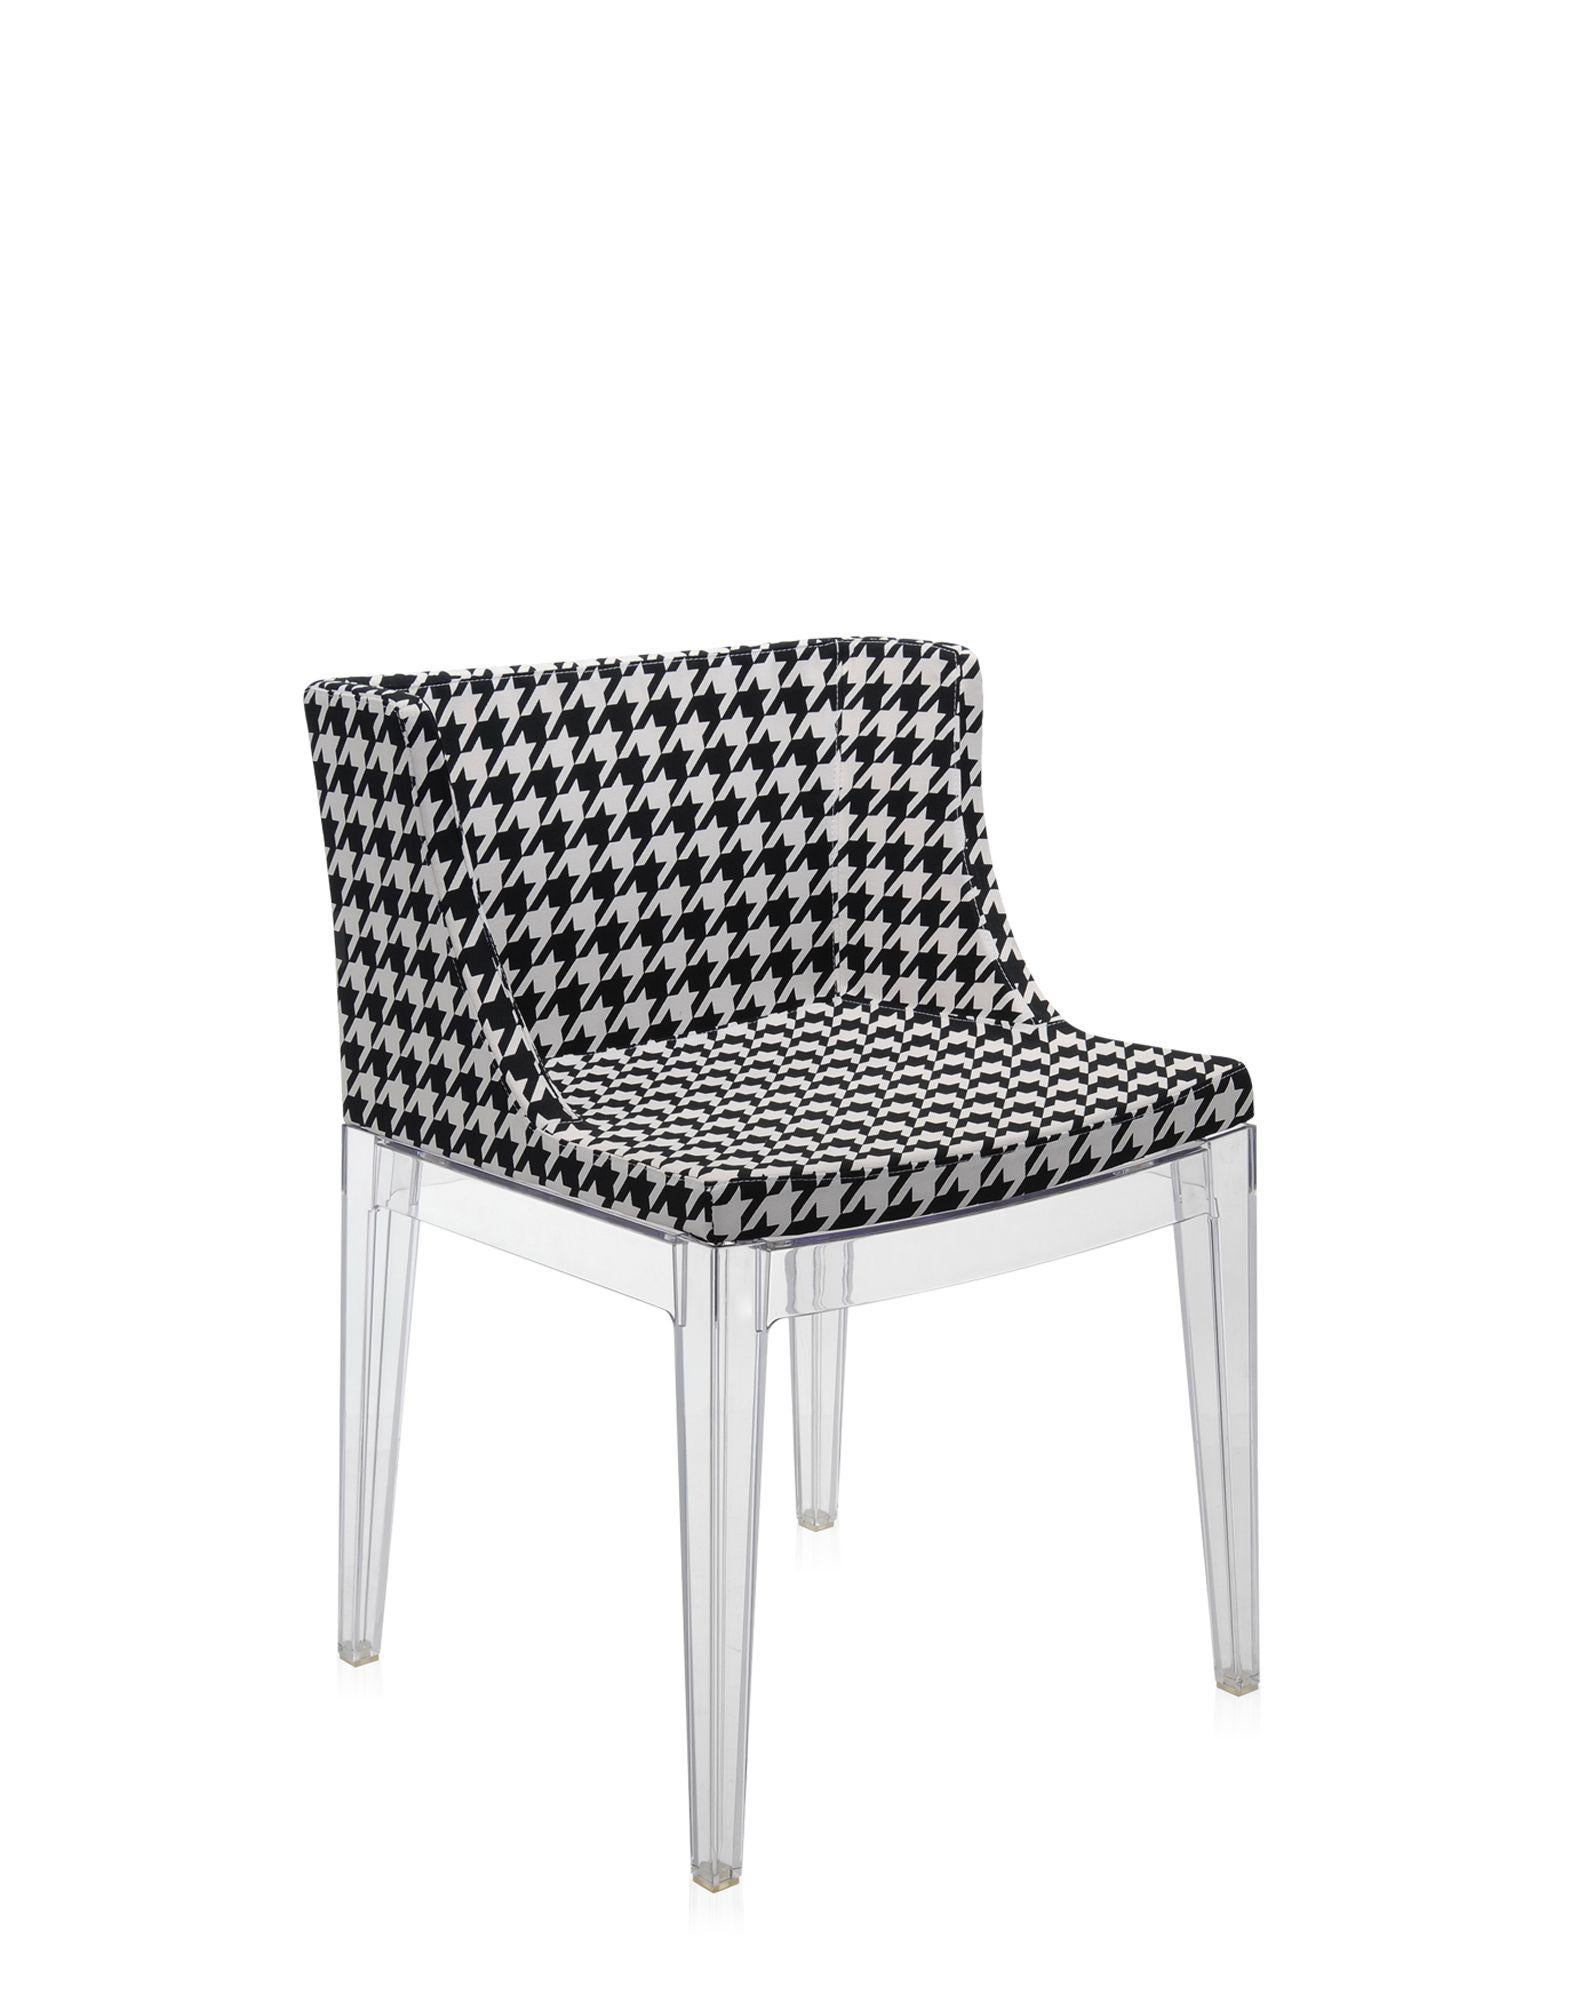 Le fauteuil Mademoiselle est habillé de la large gamme de tissus Memphis, conçus par Ettore Sottsass et Nathalie du Pasquier.
Il est proposé avec un cadre transparent ou noir.  
 